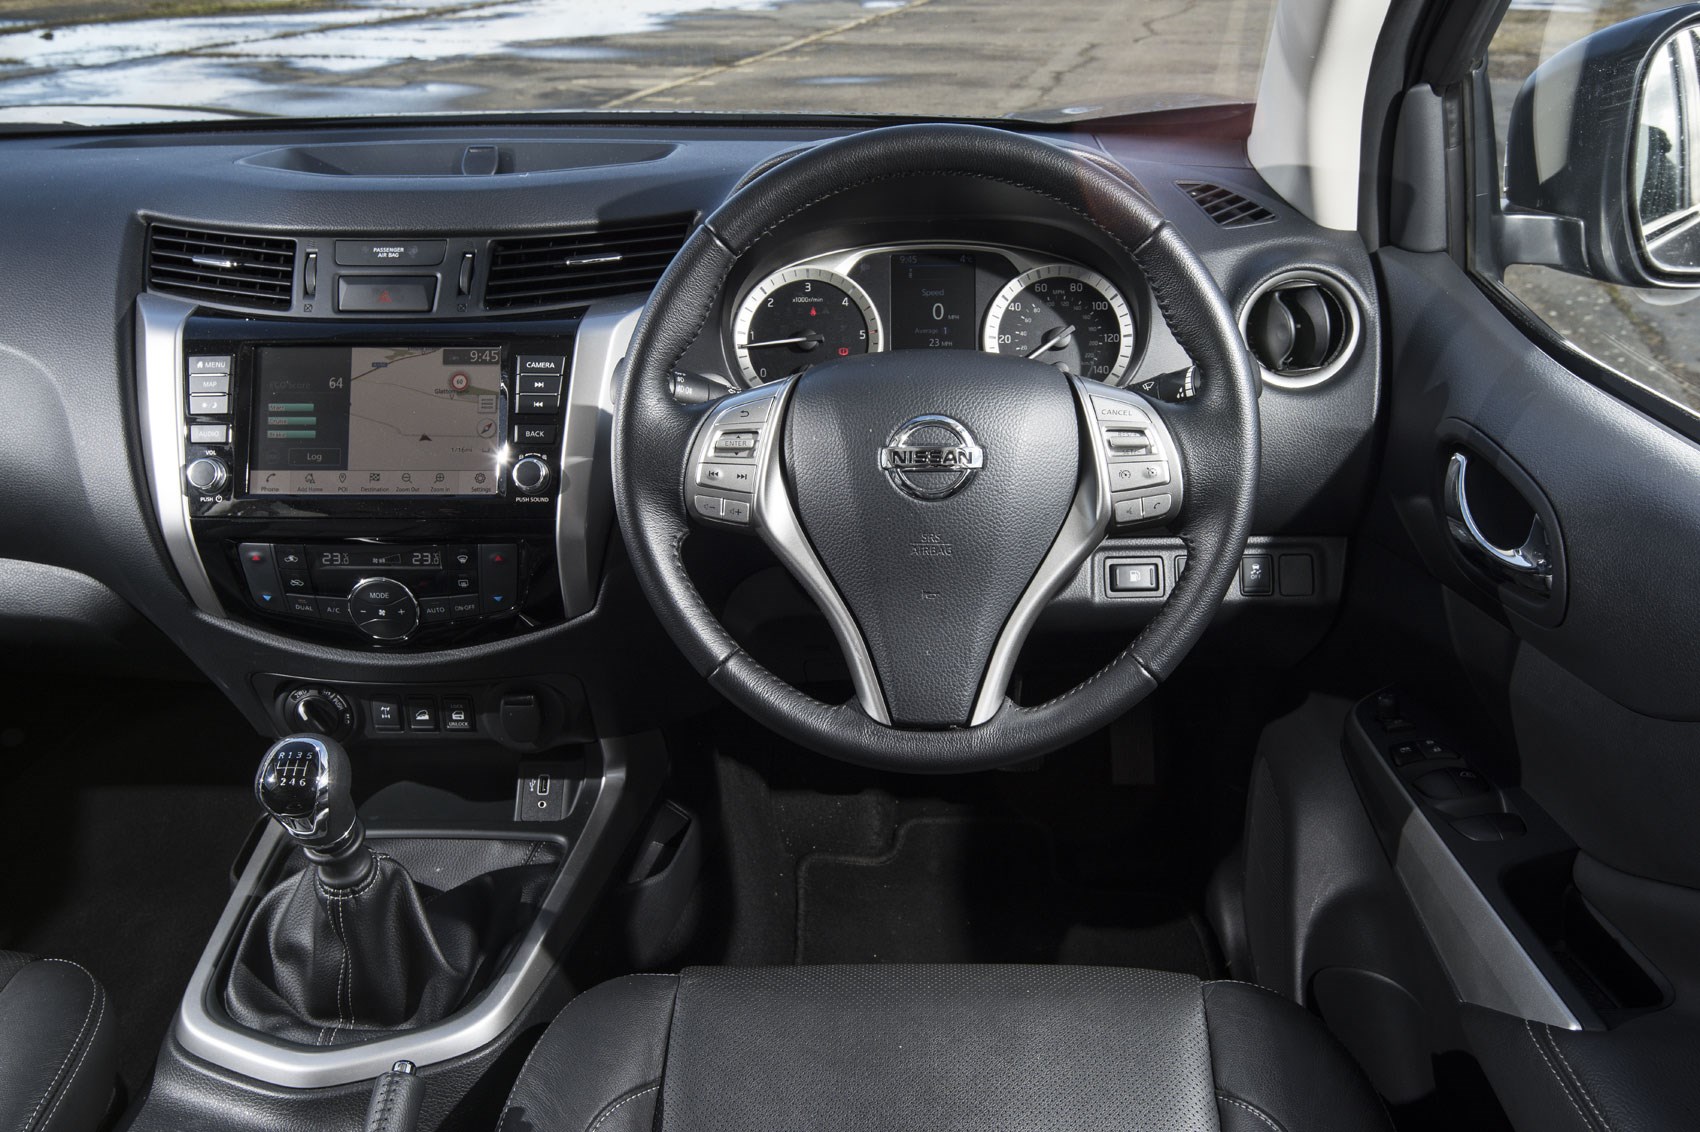 Nissan Navara review, 2019 update model, steering wheel and instruments